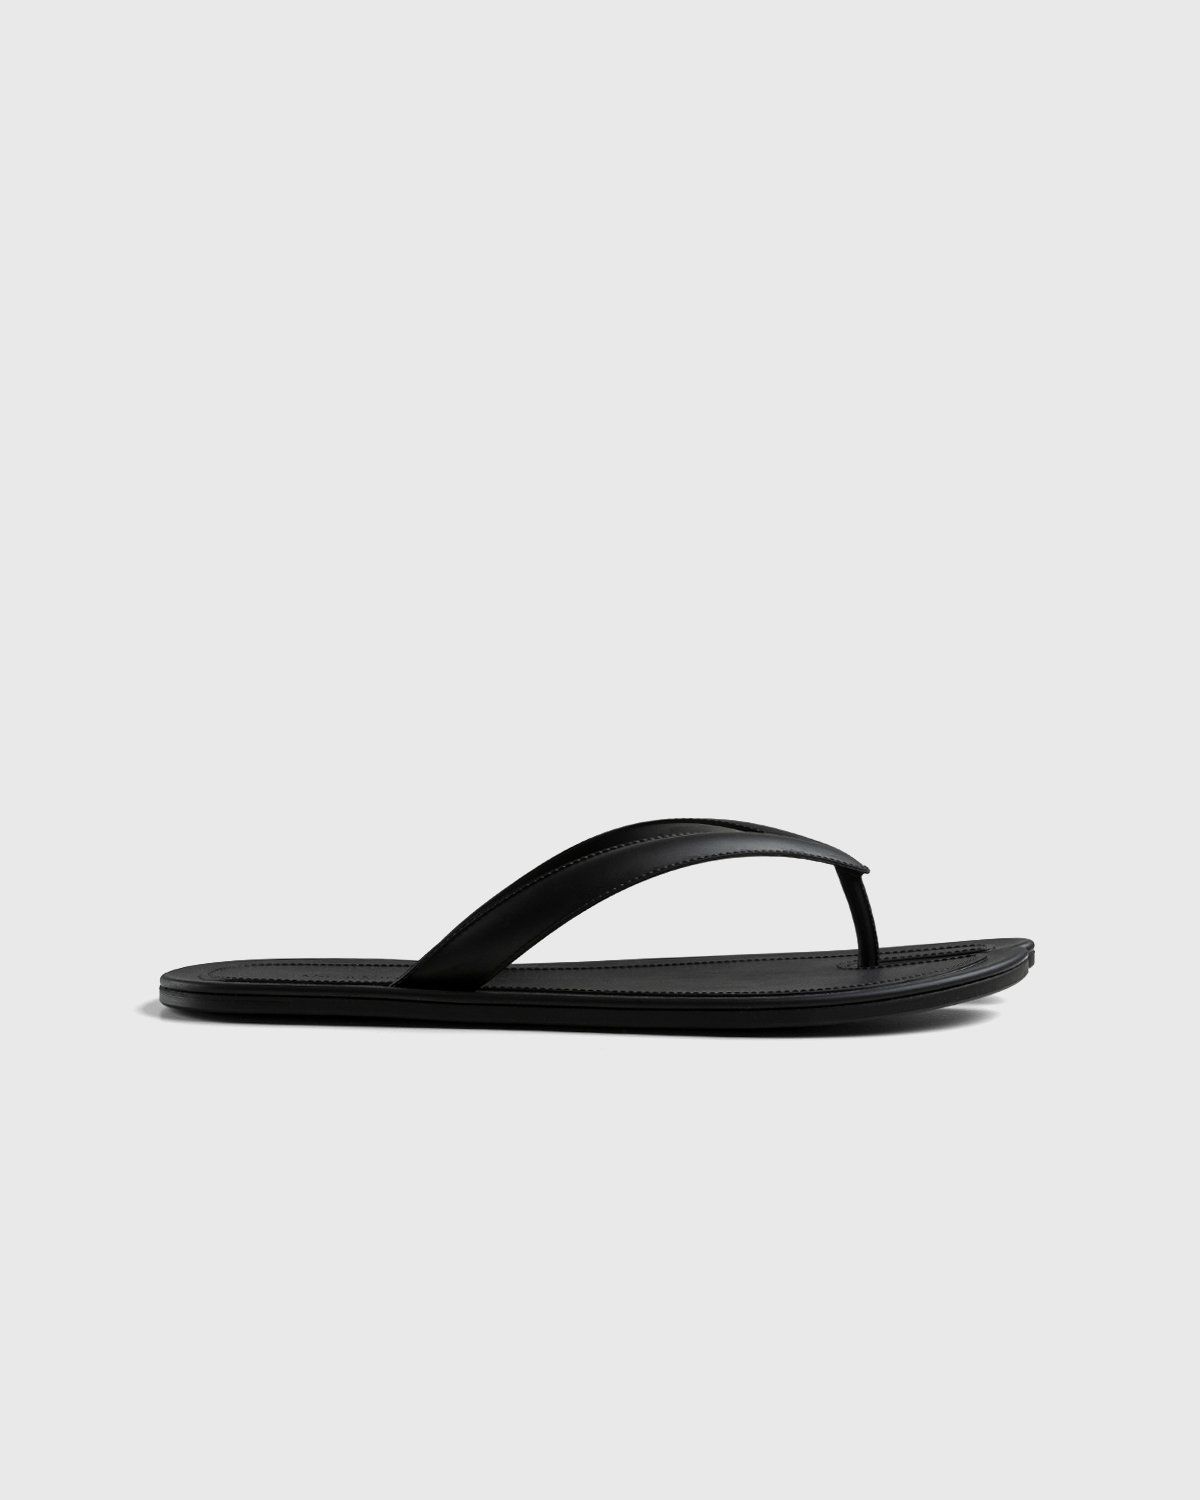 Maison Margiela – Tabi Flip-Flops Black - Sandals & Slides - Black - Image 2